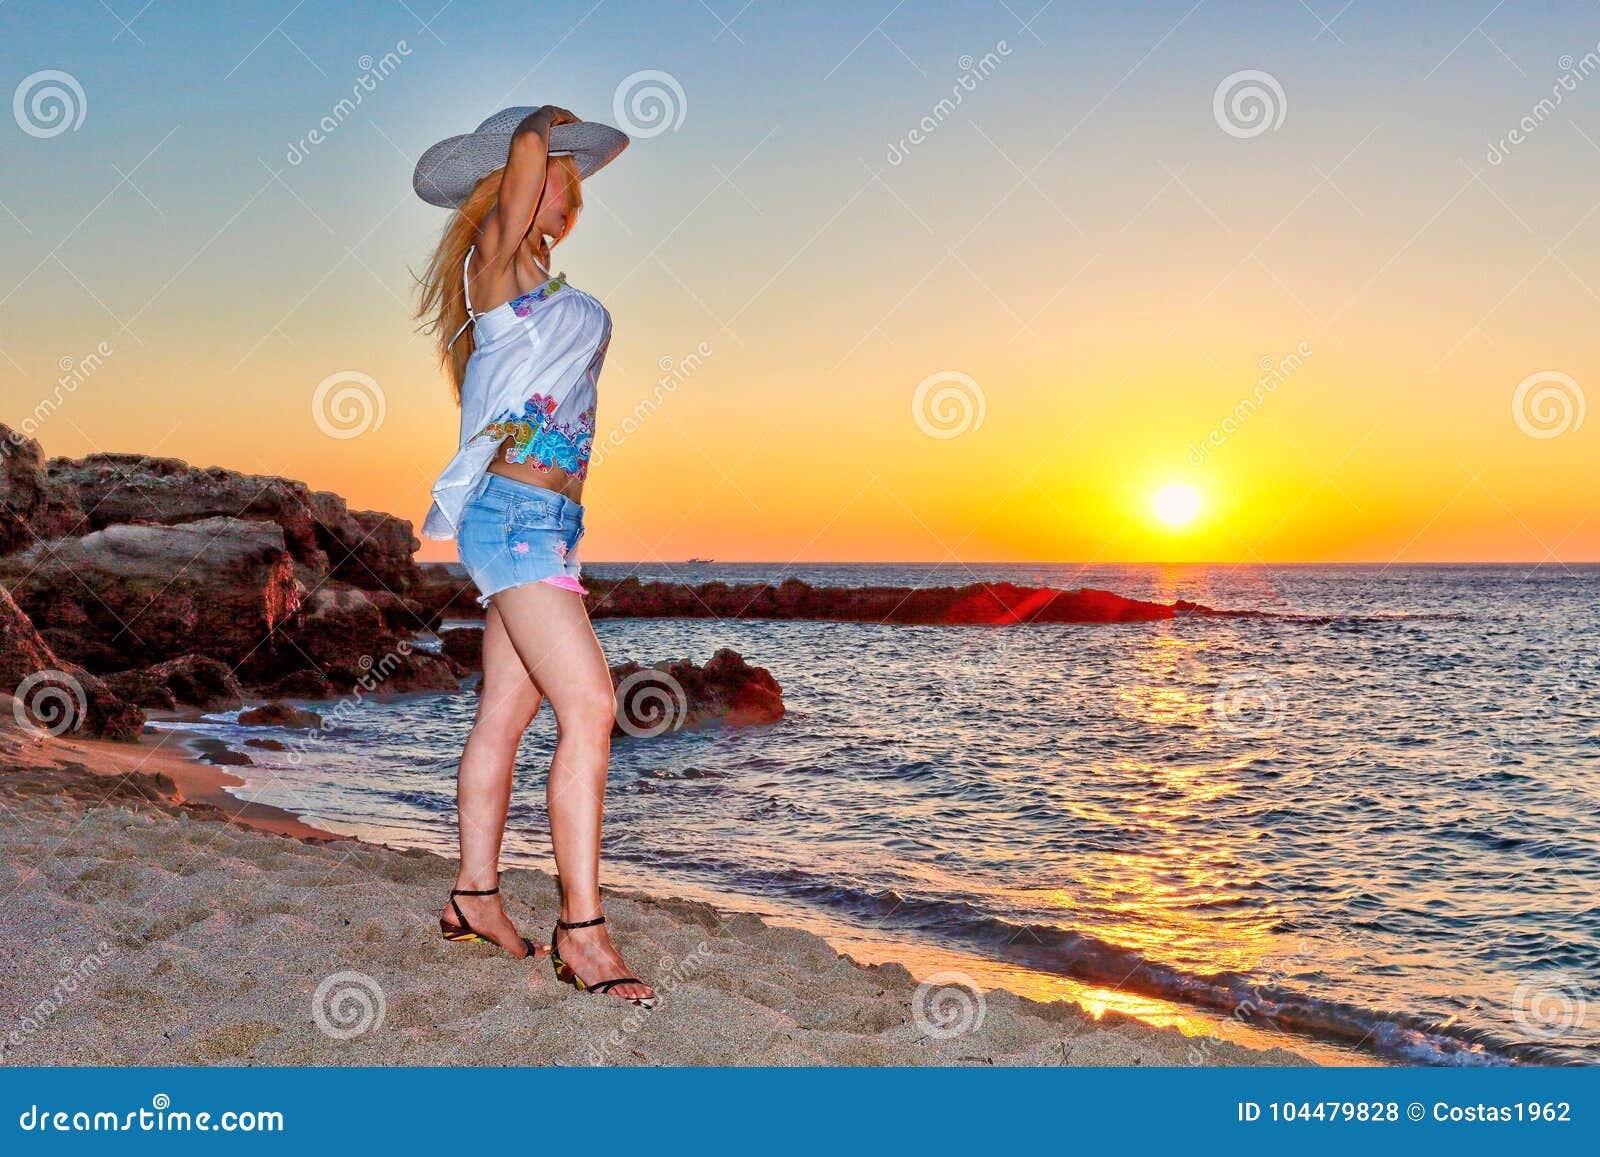 a woman at sunset on falassarna of creta, greece